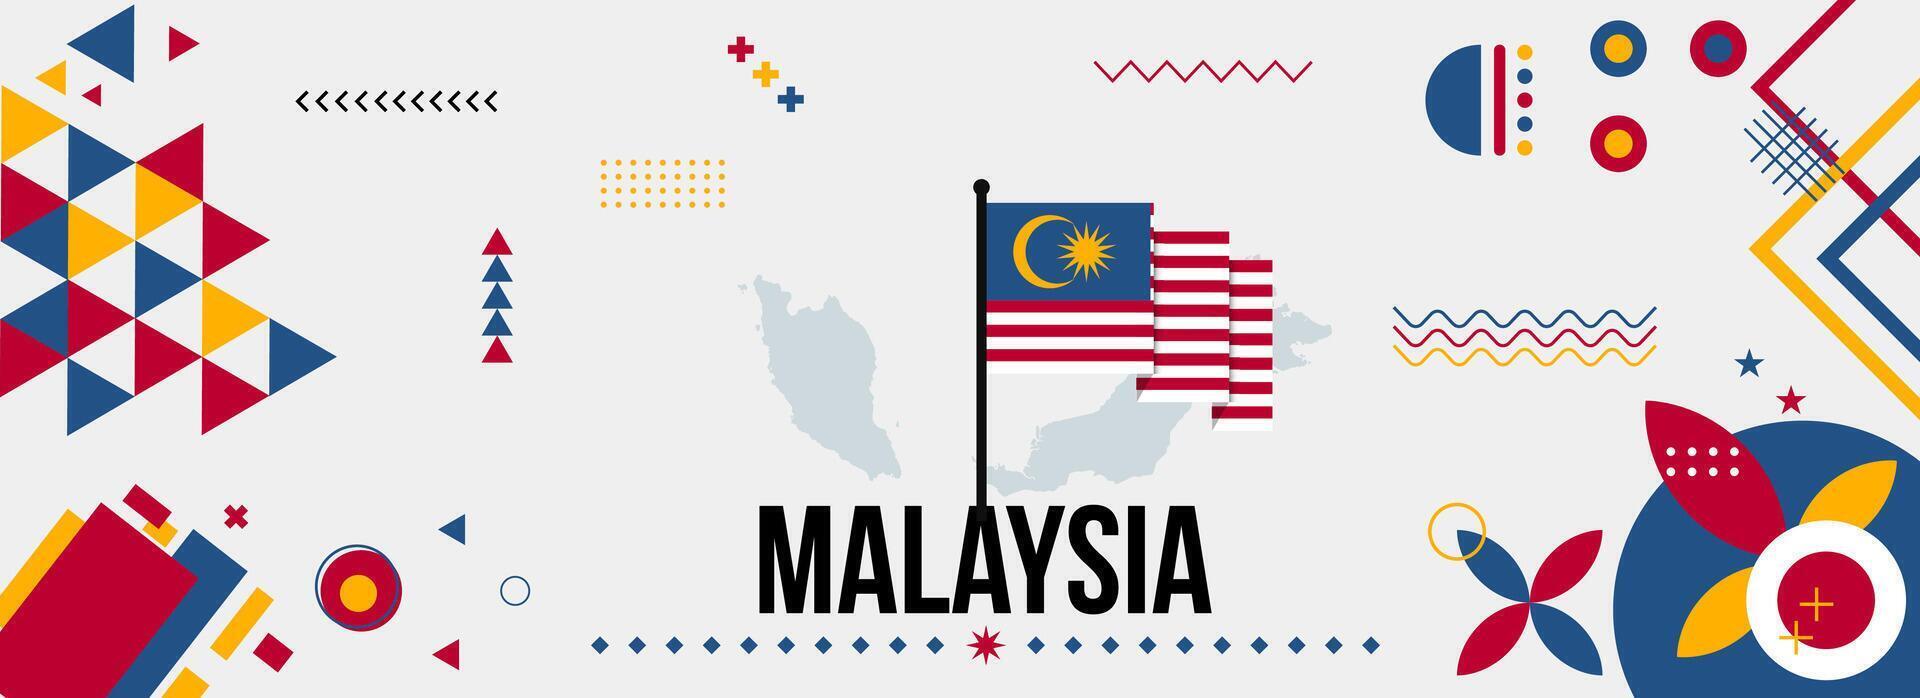 Malaysia National oder Unabhängigkeit Tag Banner zum Land Feier. Flagge und Karte von Malaysia mit modern retro Design mit Typorgaphie abstrakt geometrisch Symbole. Vektor Illustration.